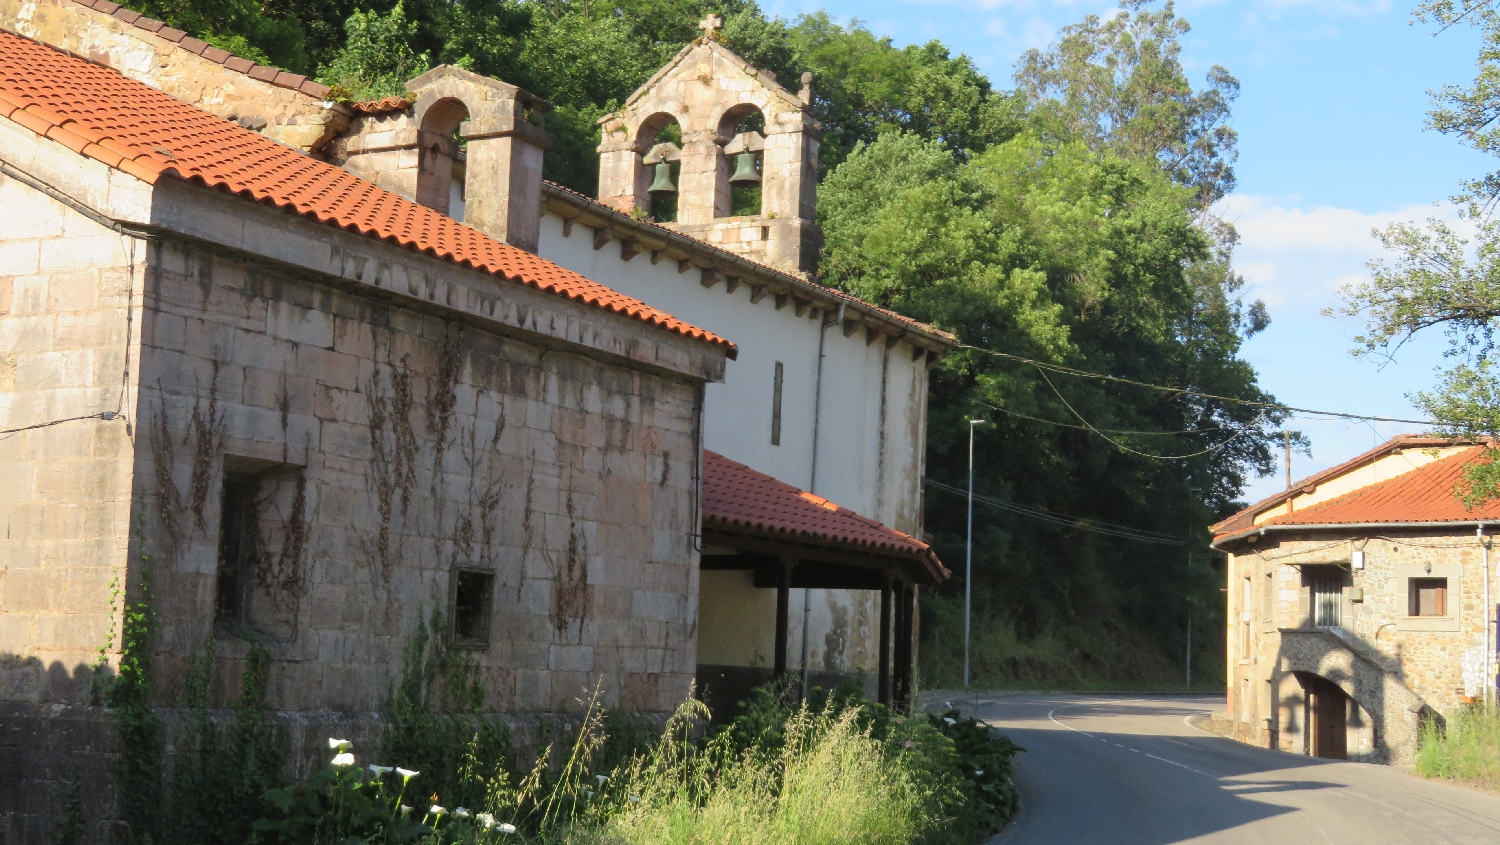 Camino Primitivo, Peñaflor, templom, éppen a templomnál kell jobbra fordulni, arra vezet a jelzés